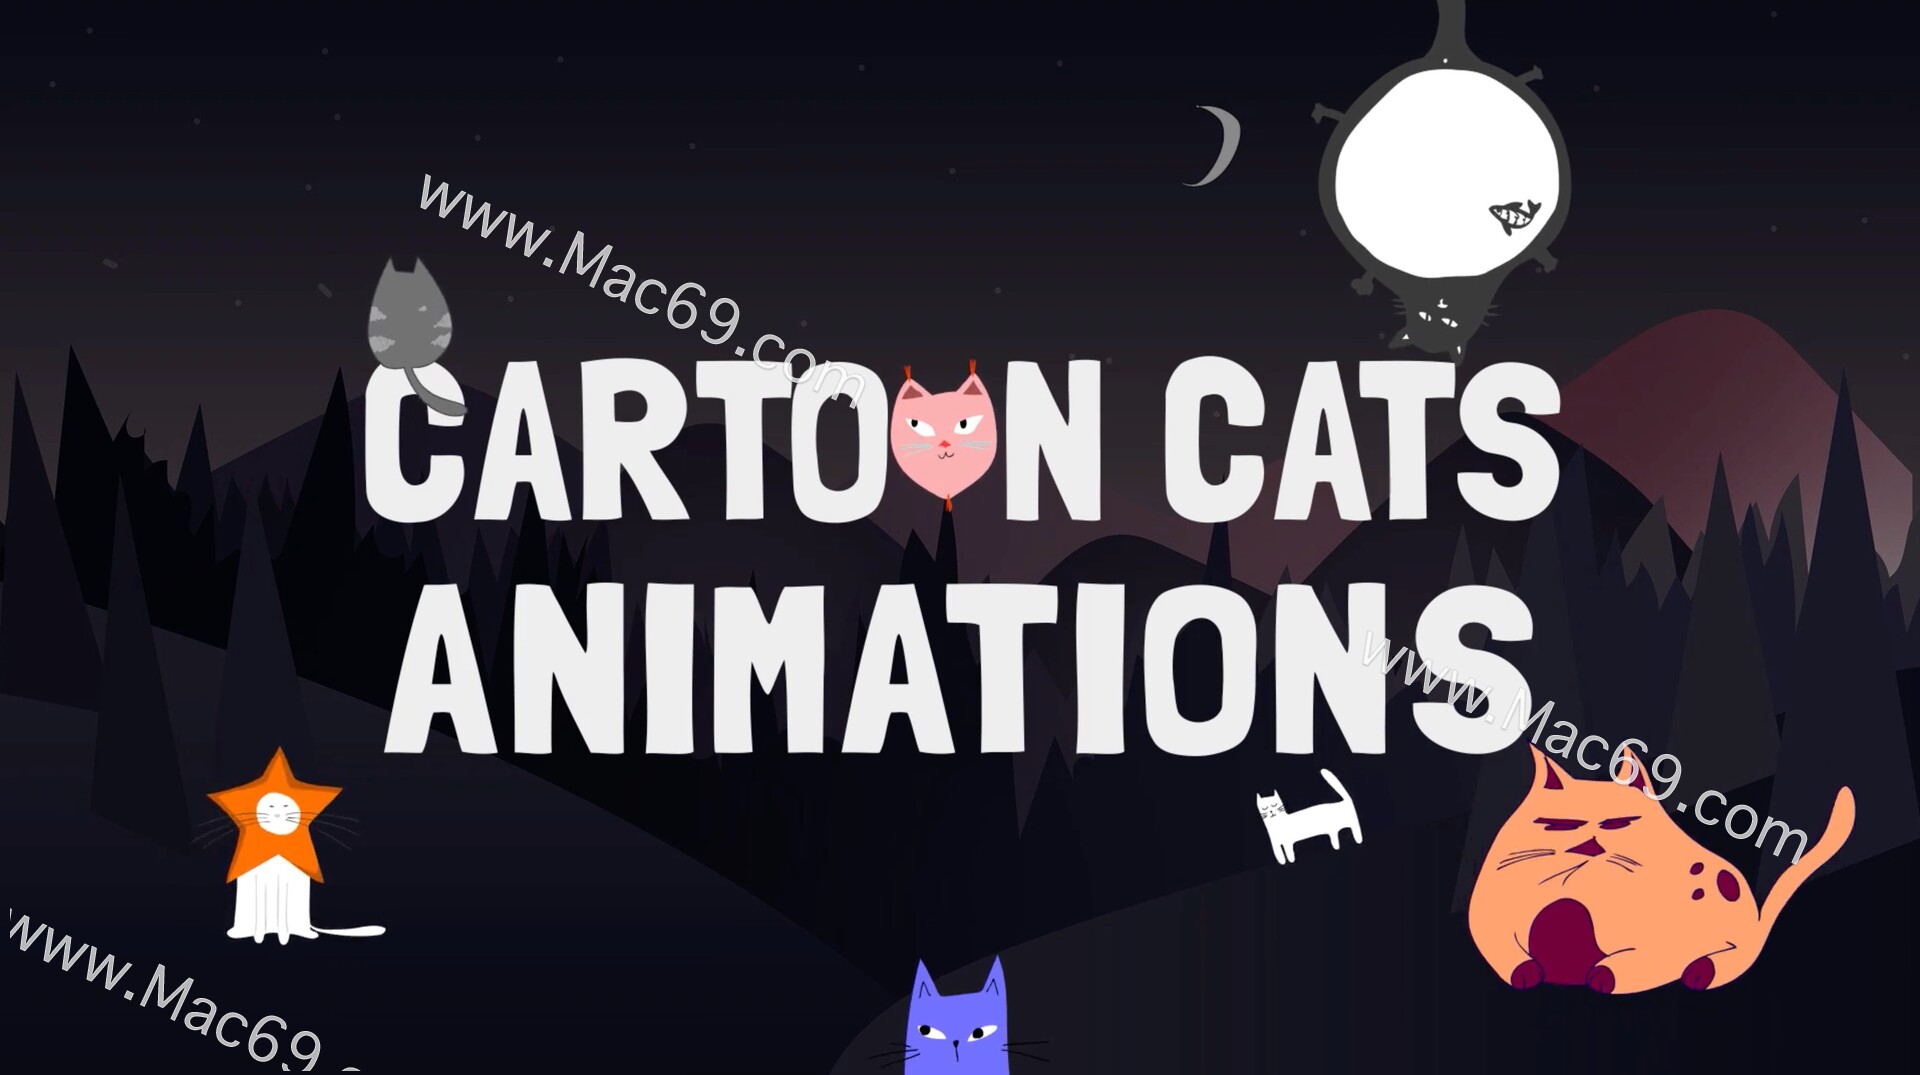 FCPX插件Cartoon Cats for Mac(卡通猫动画插件)